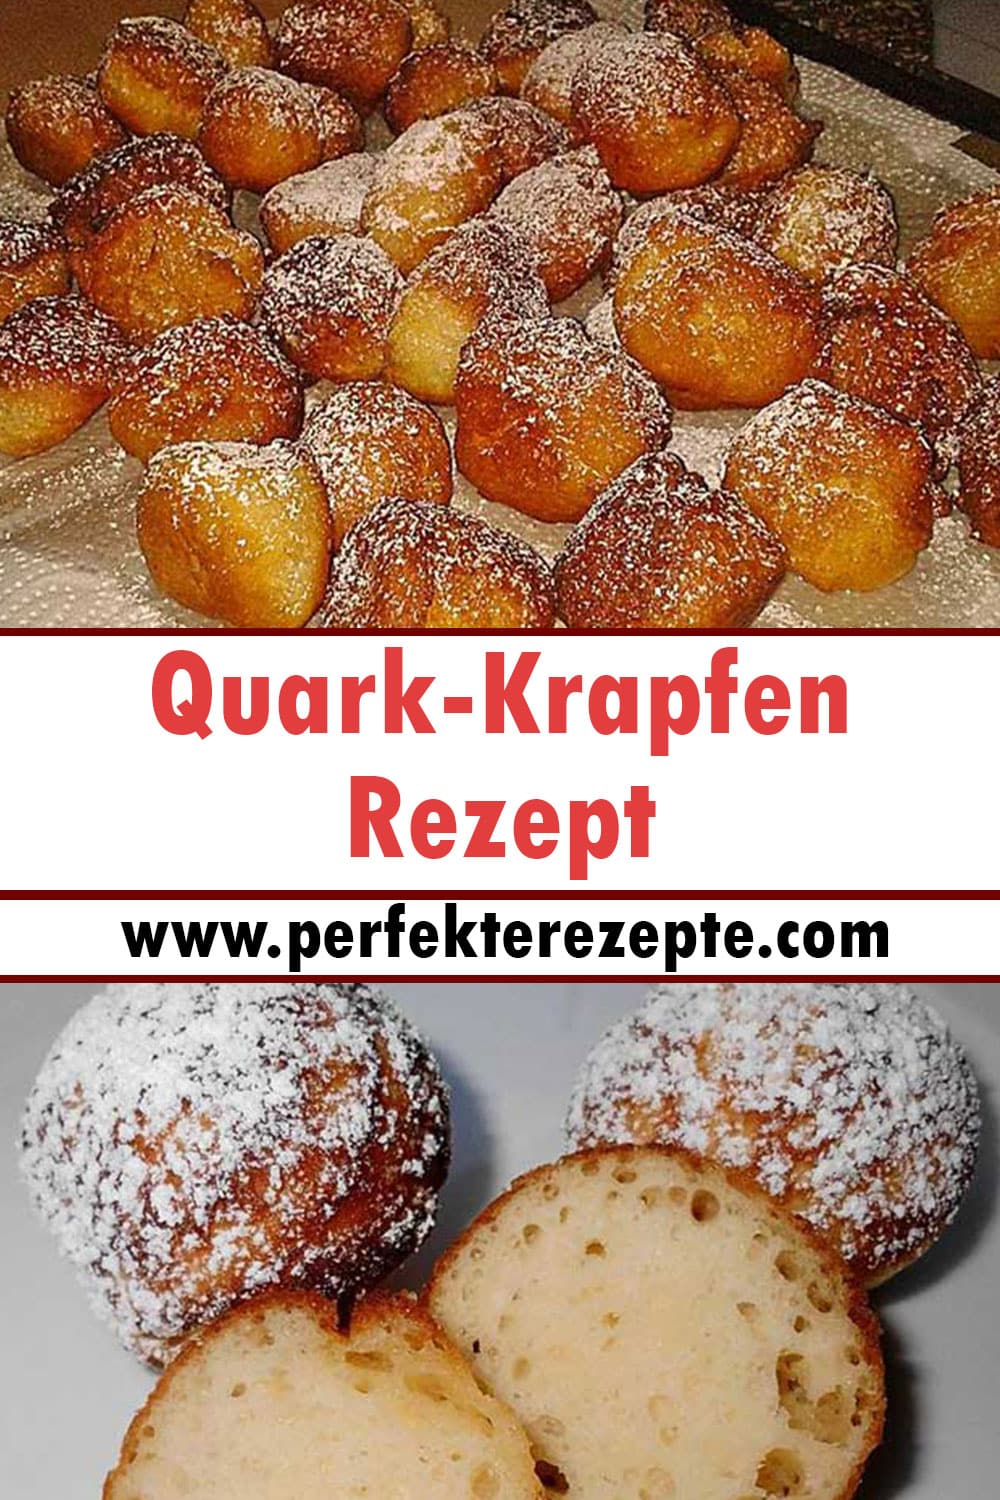 Quark-Krapfen Rezept